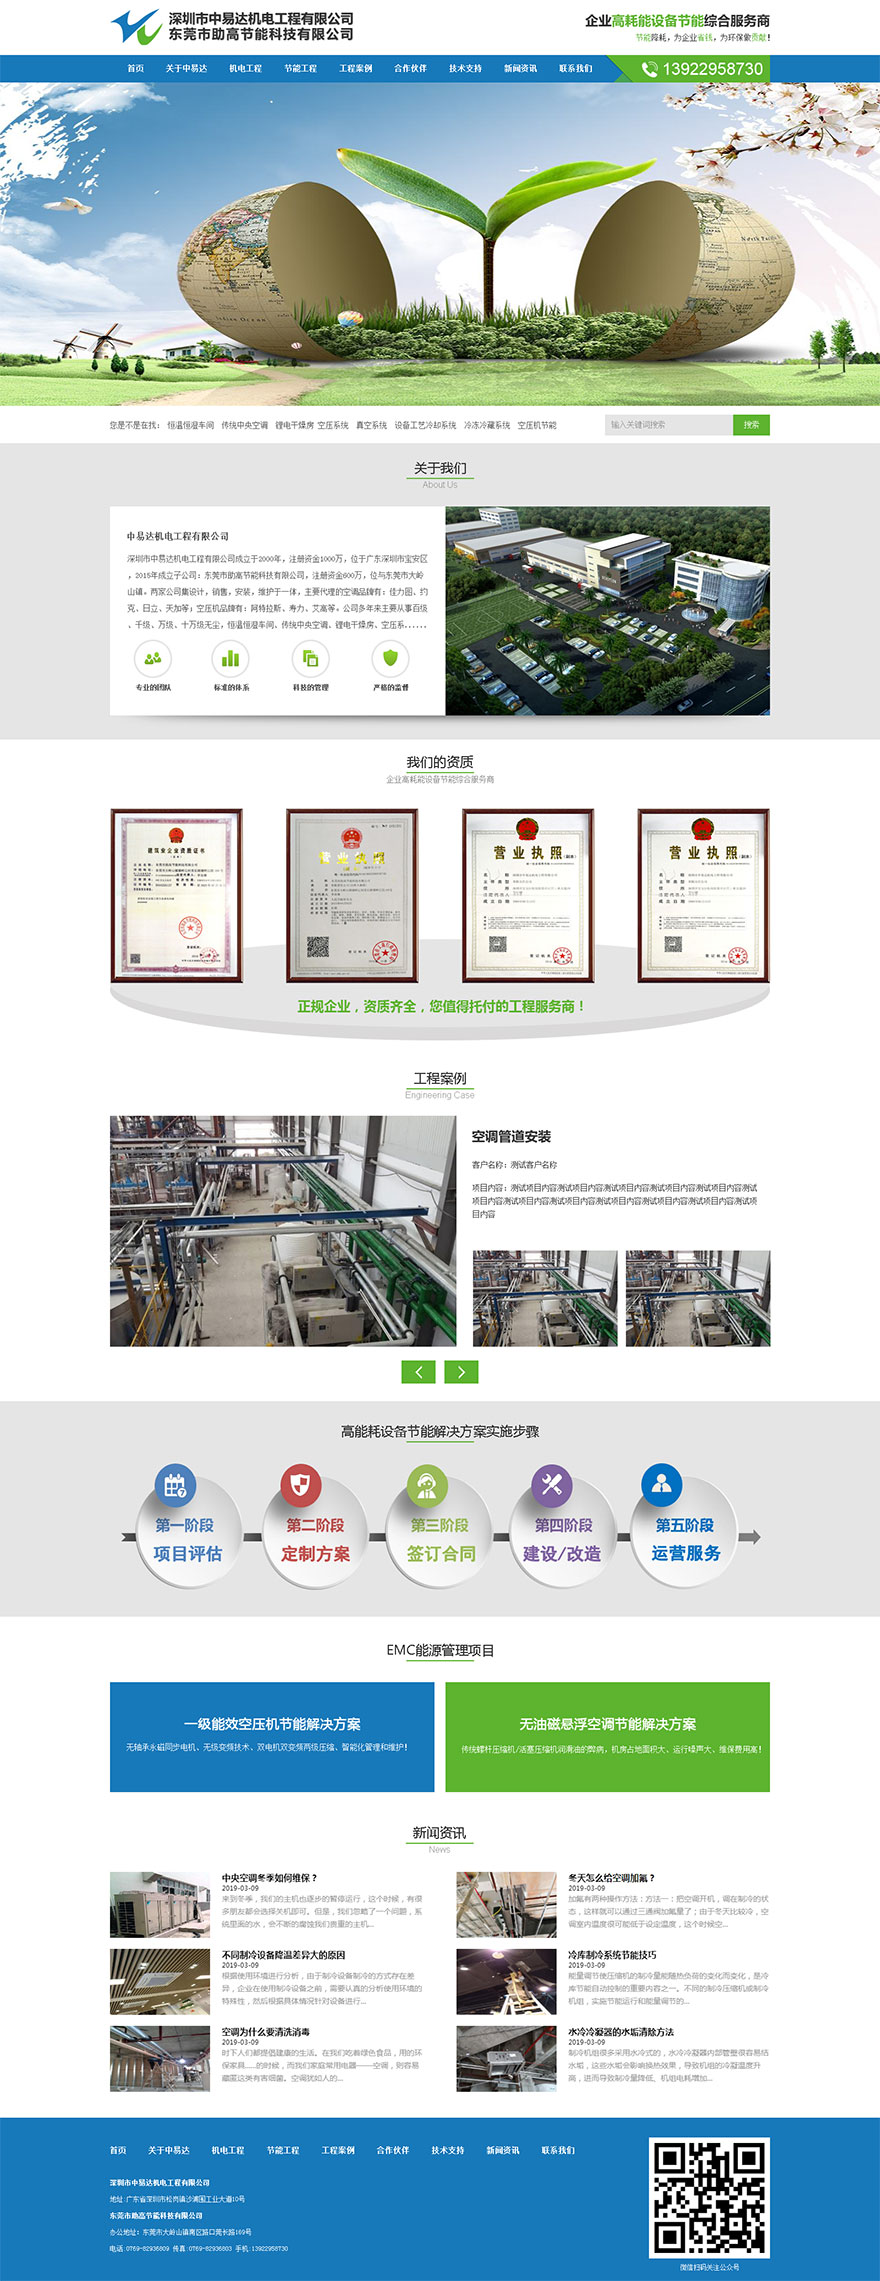 深圳中易达机电工程有限公司网站设计